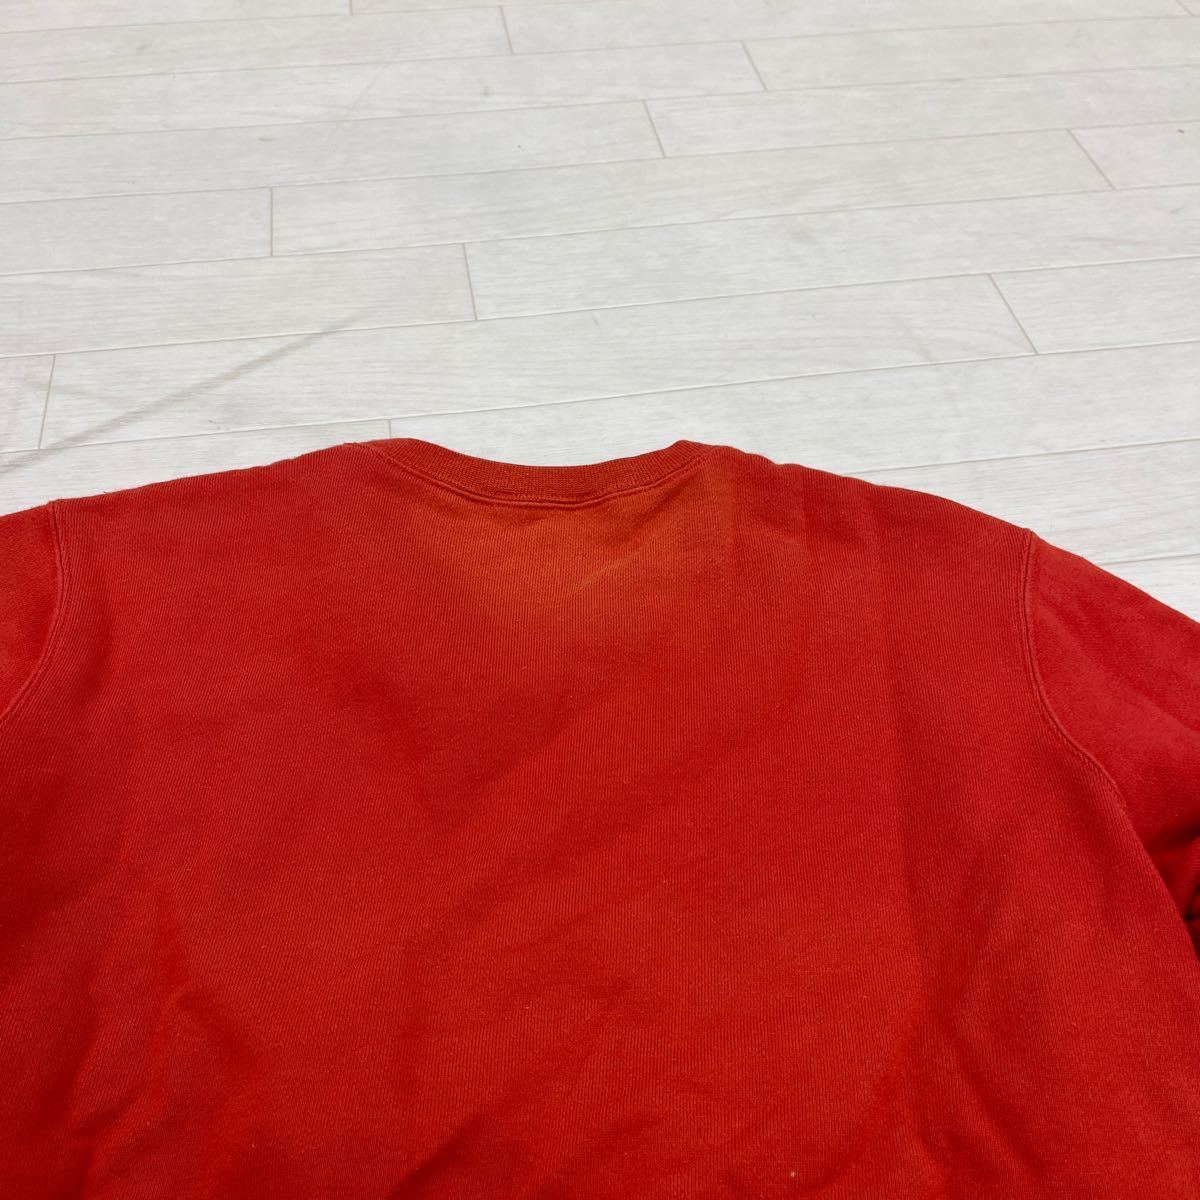 1299* RALPH LAUREN Ralph Lauren tops тренировочный футболка обратная сторона ворсистый длинный рукав Logo вышивка orange женский M